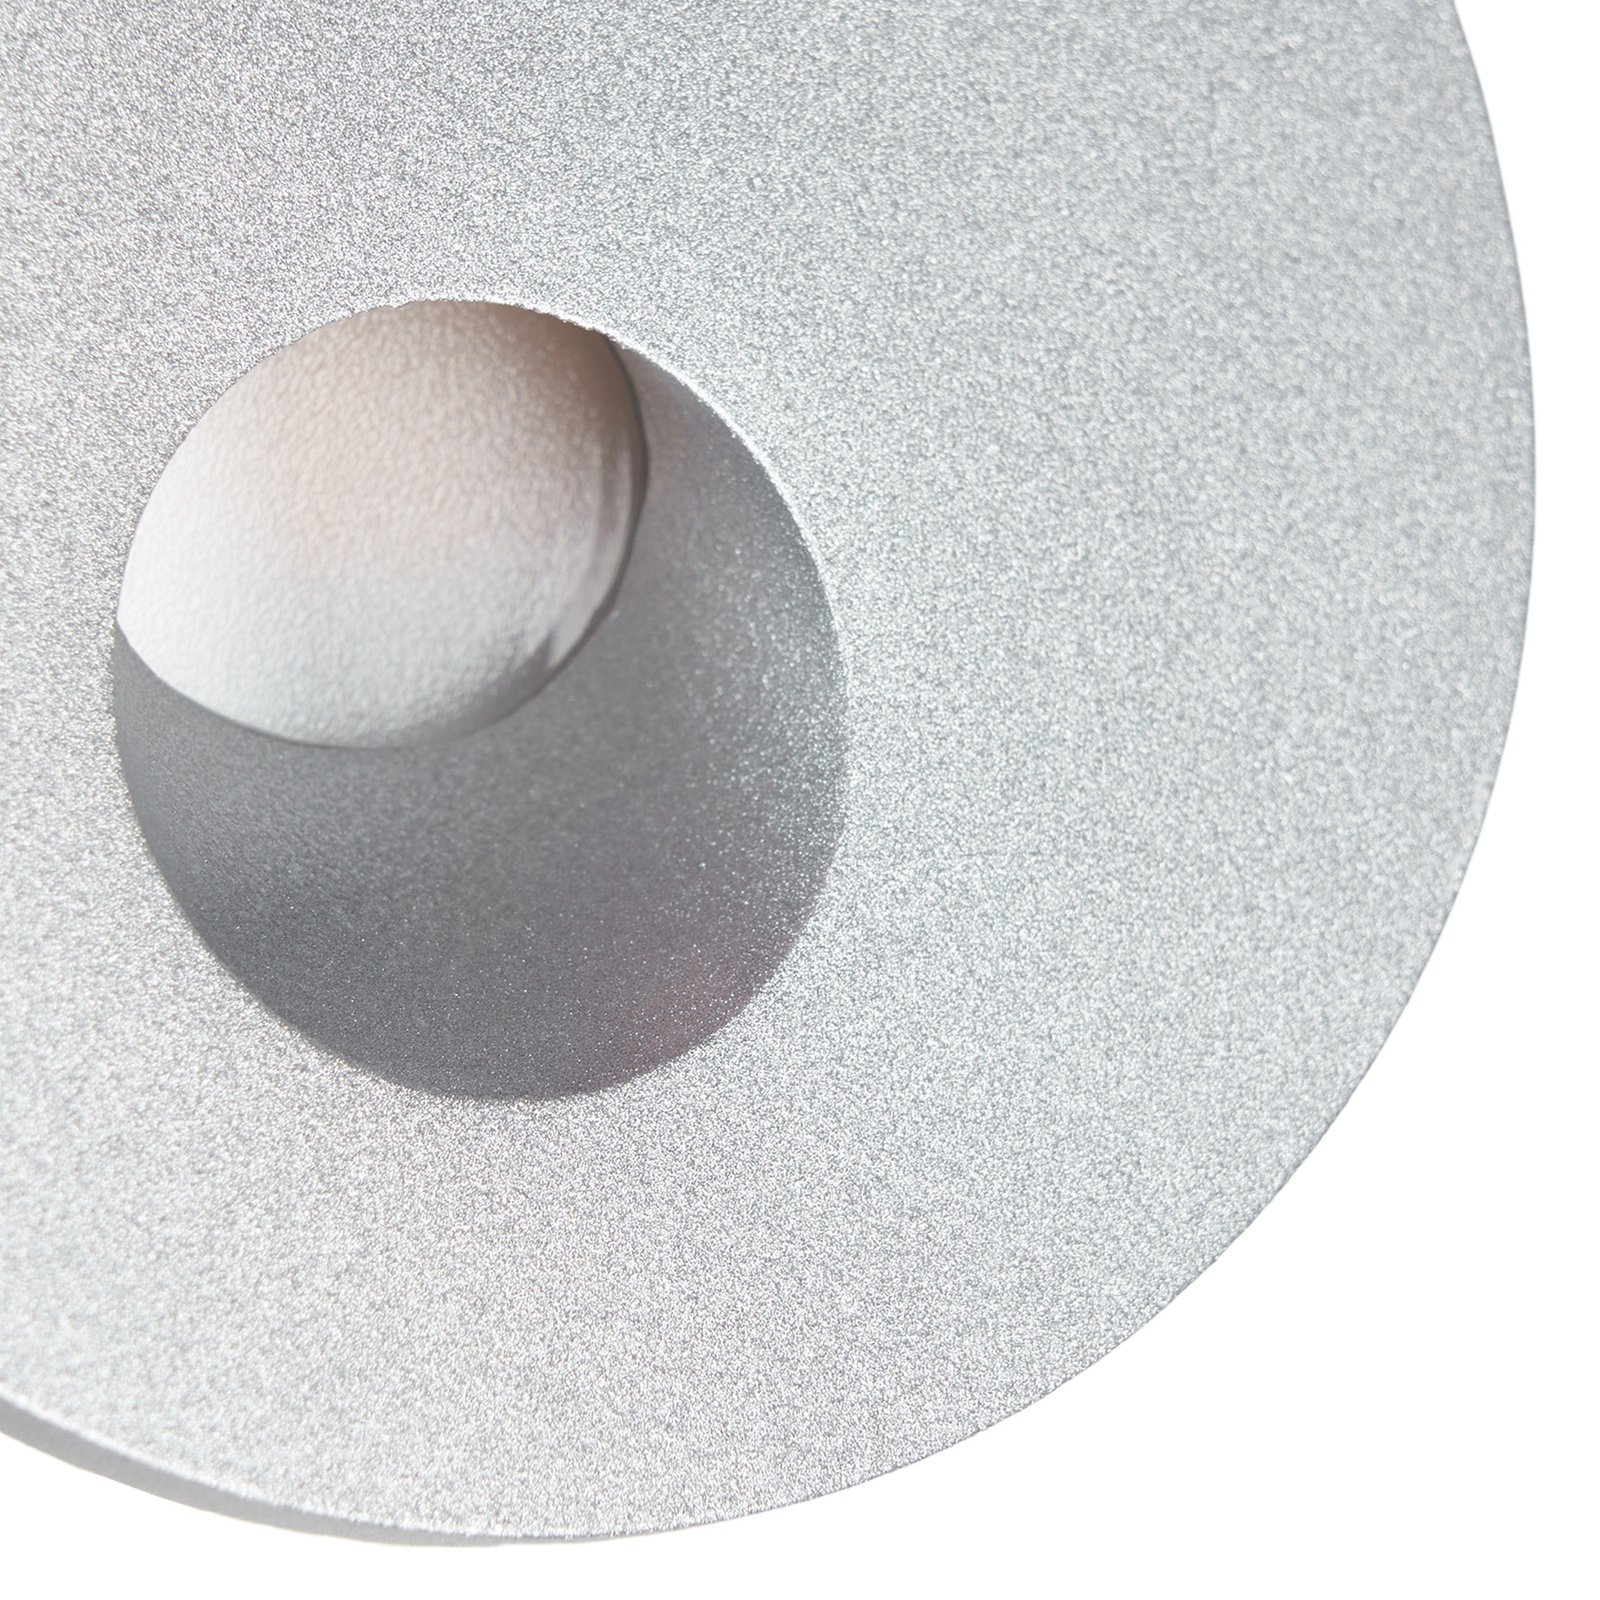 Arcchio Vexi LED podhledové CCT stříbrná Ø 7,5 cm